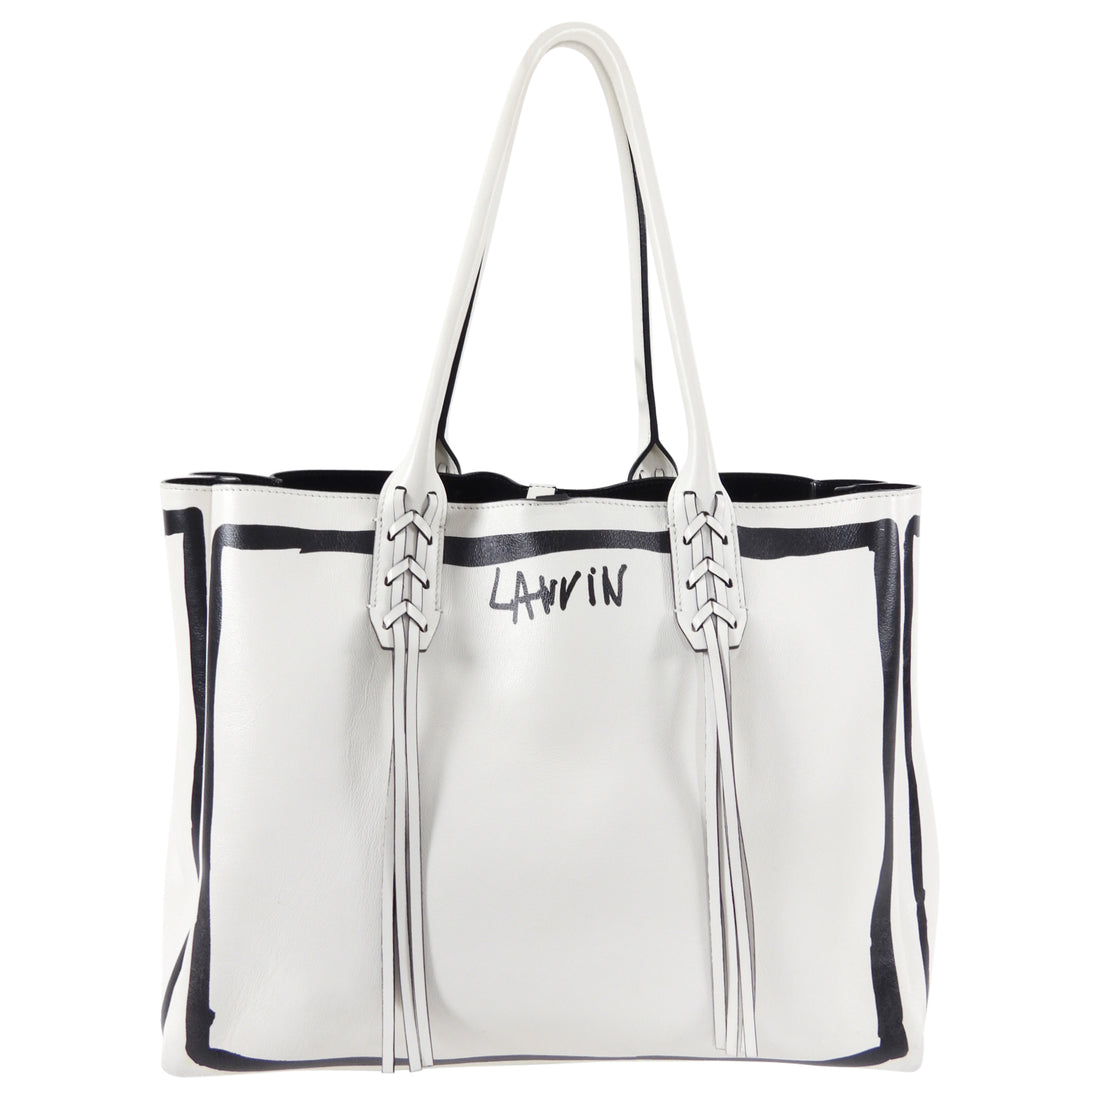 Lanvin Black and White Graphic Shopper Tote Bag